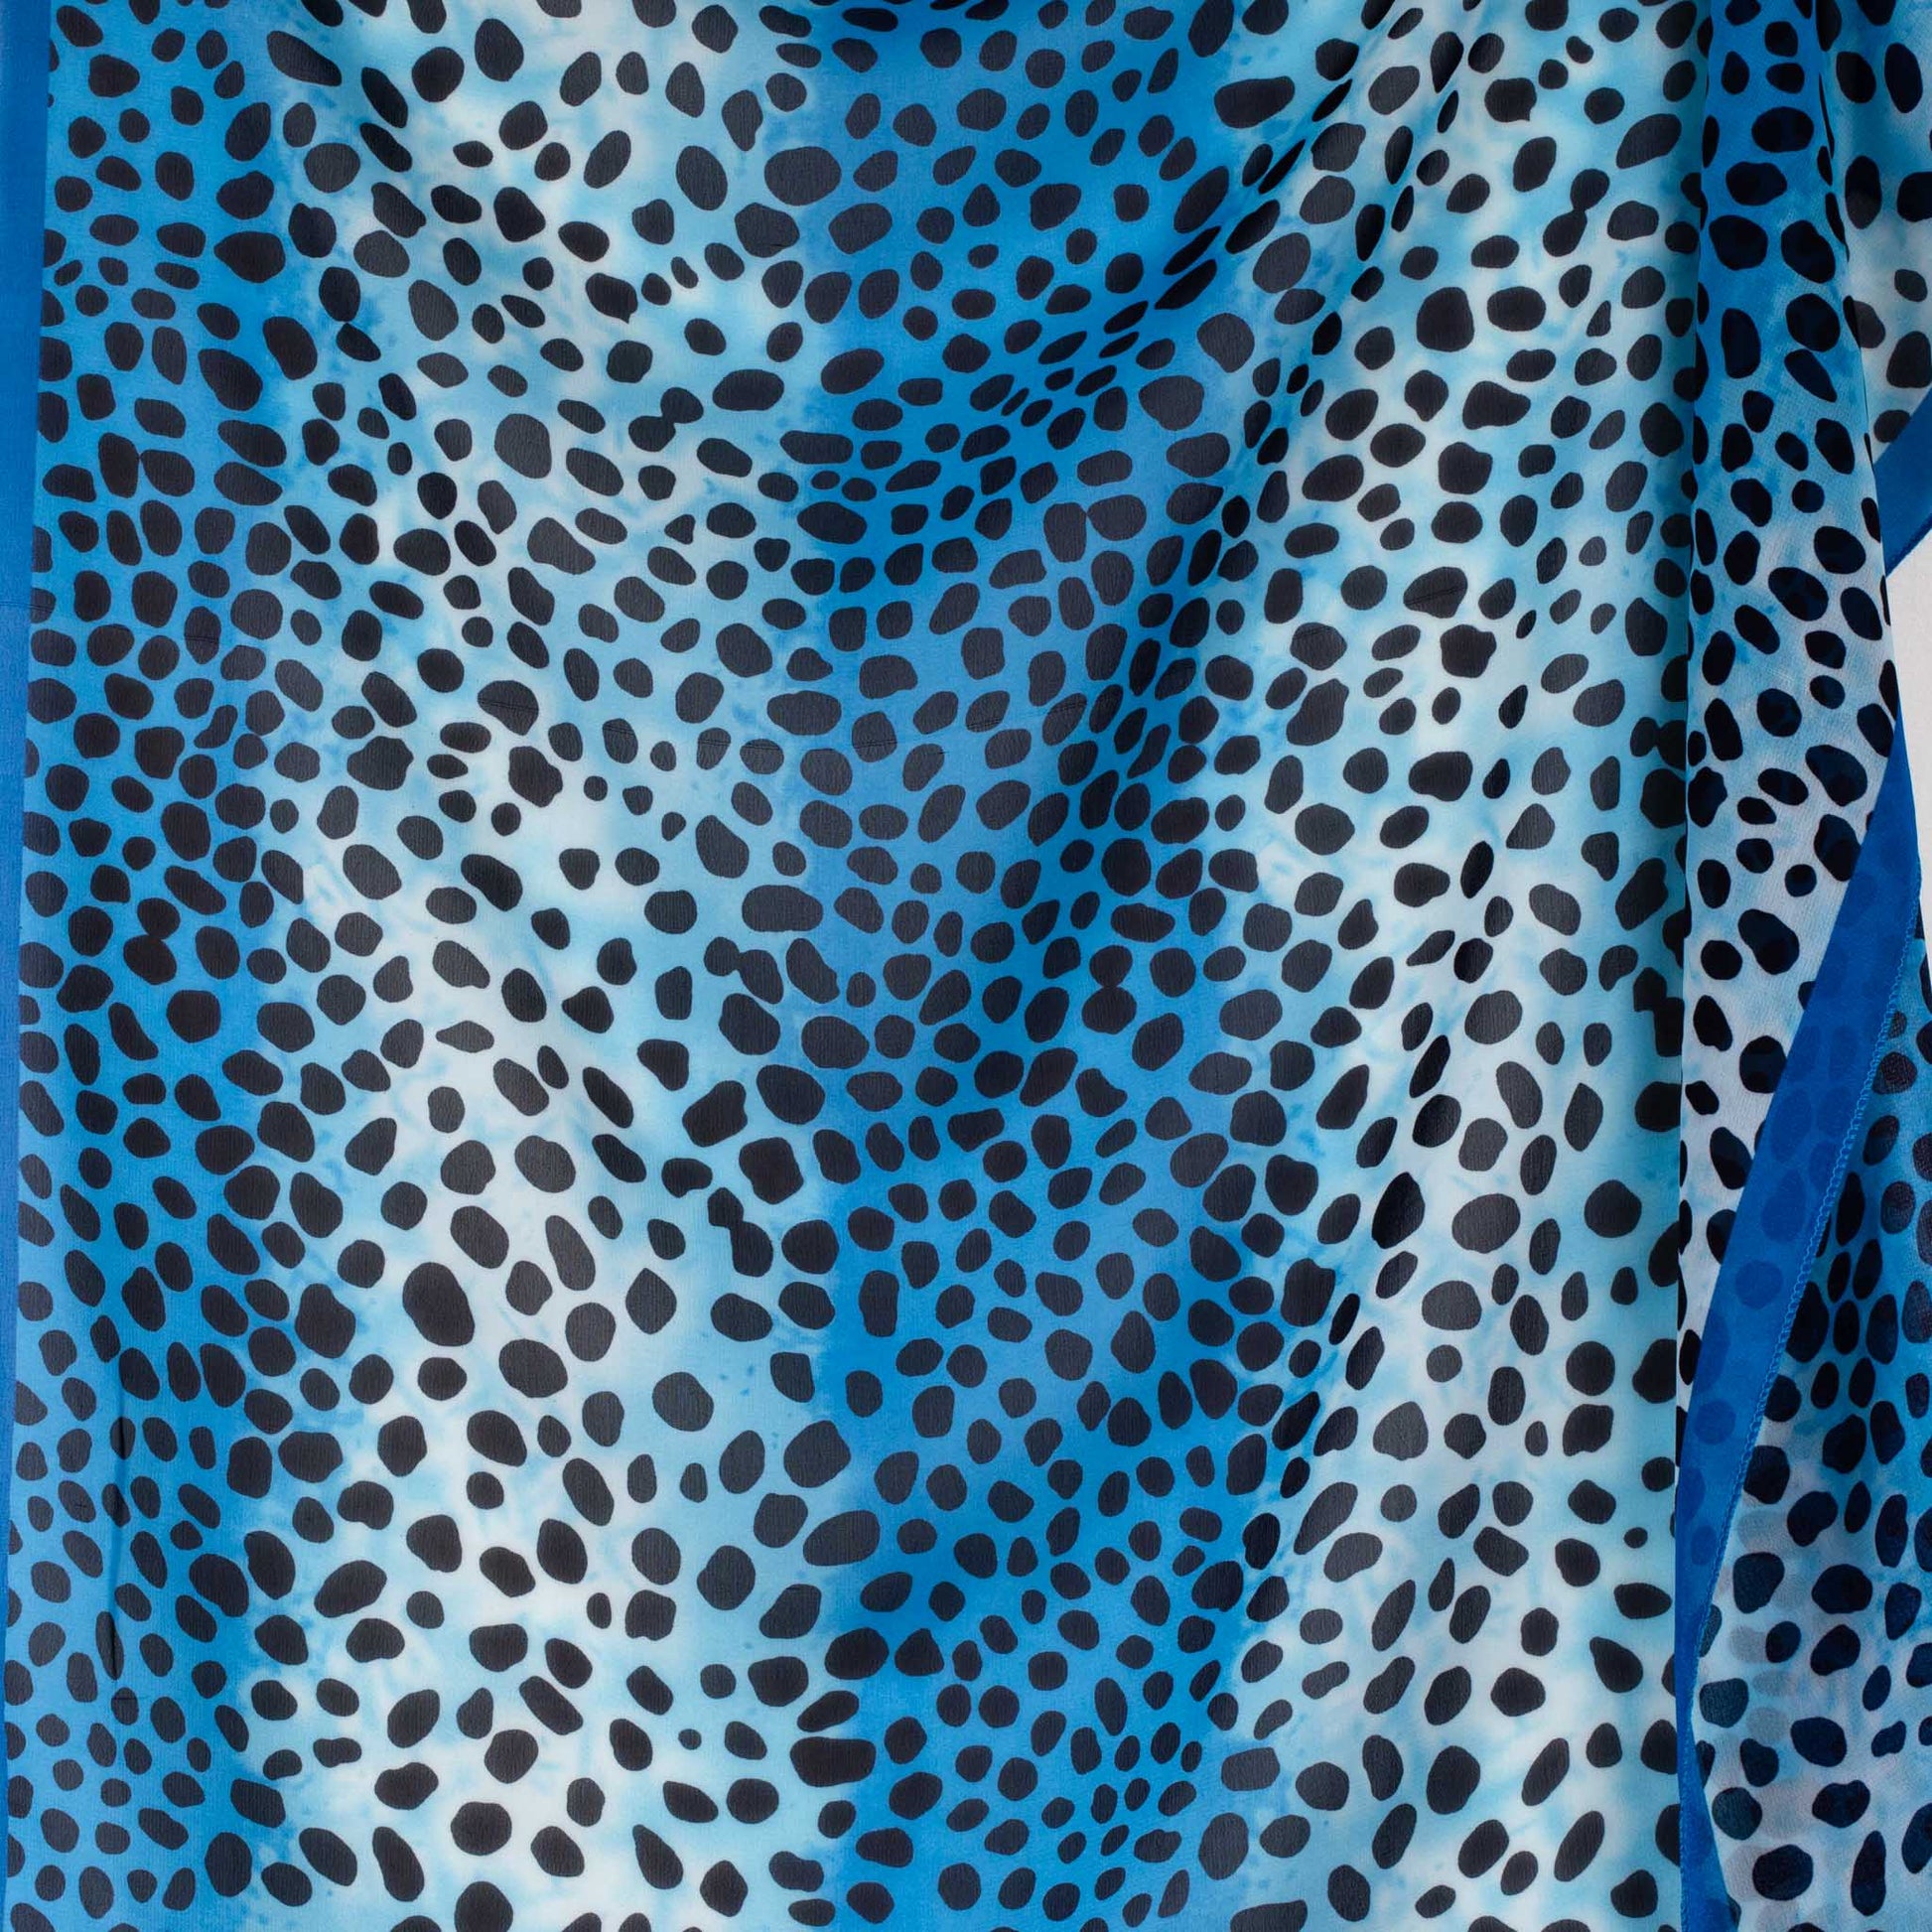 Eșarfă damă din mătase cu animal print în degrade, 65 x 65 cm - Albastru